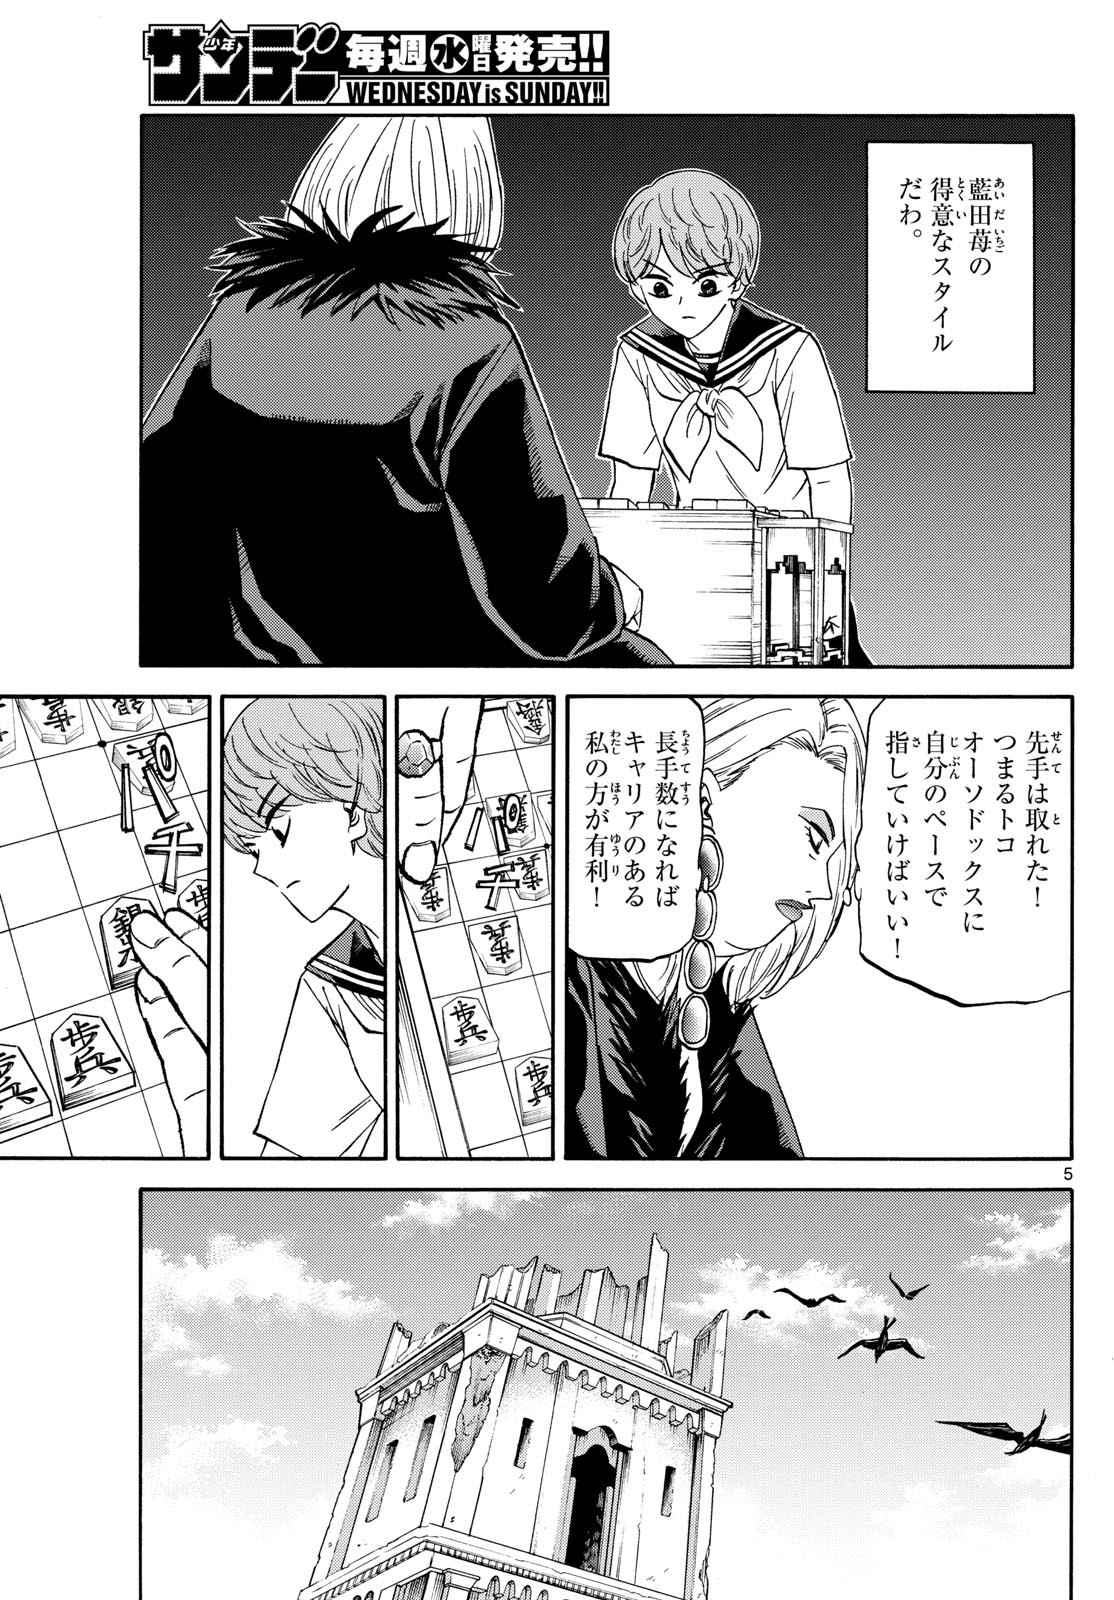 Ryu-to-Ichigo - Chapter 192 - Page 5